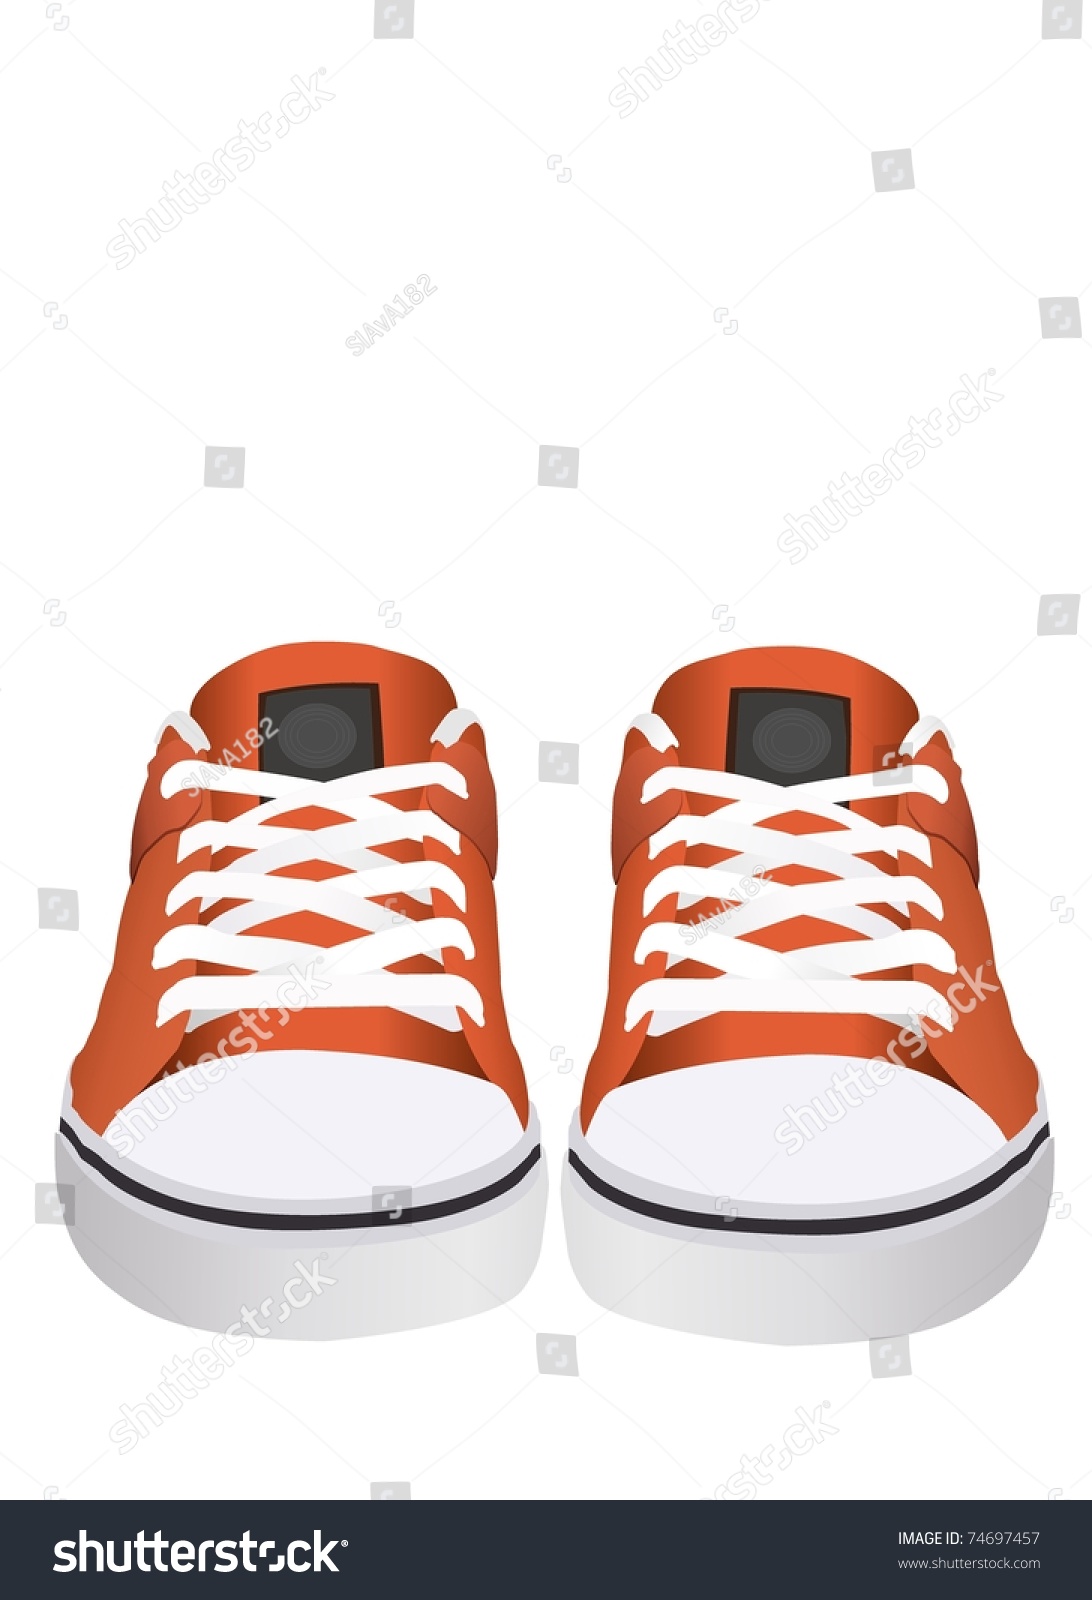 Vector Orange Sneakers - 74697457 : Shutterstock